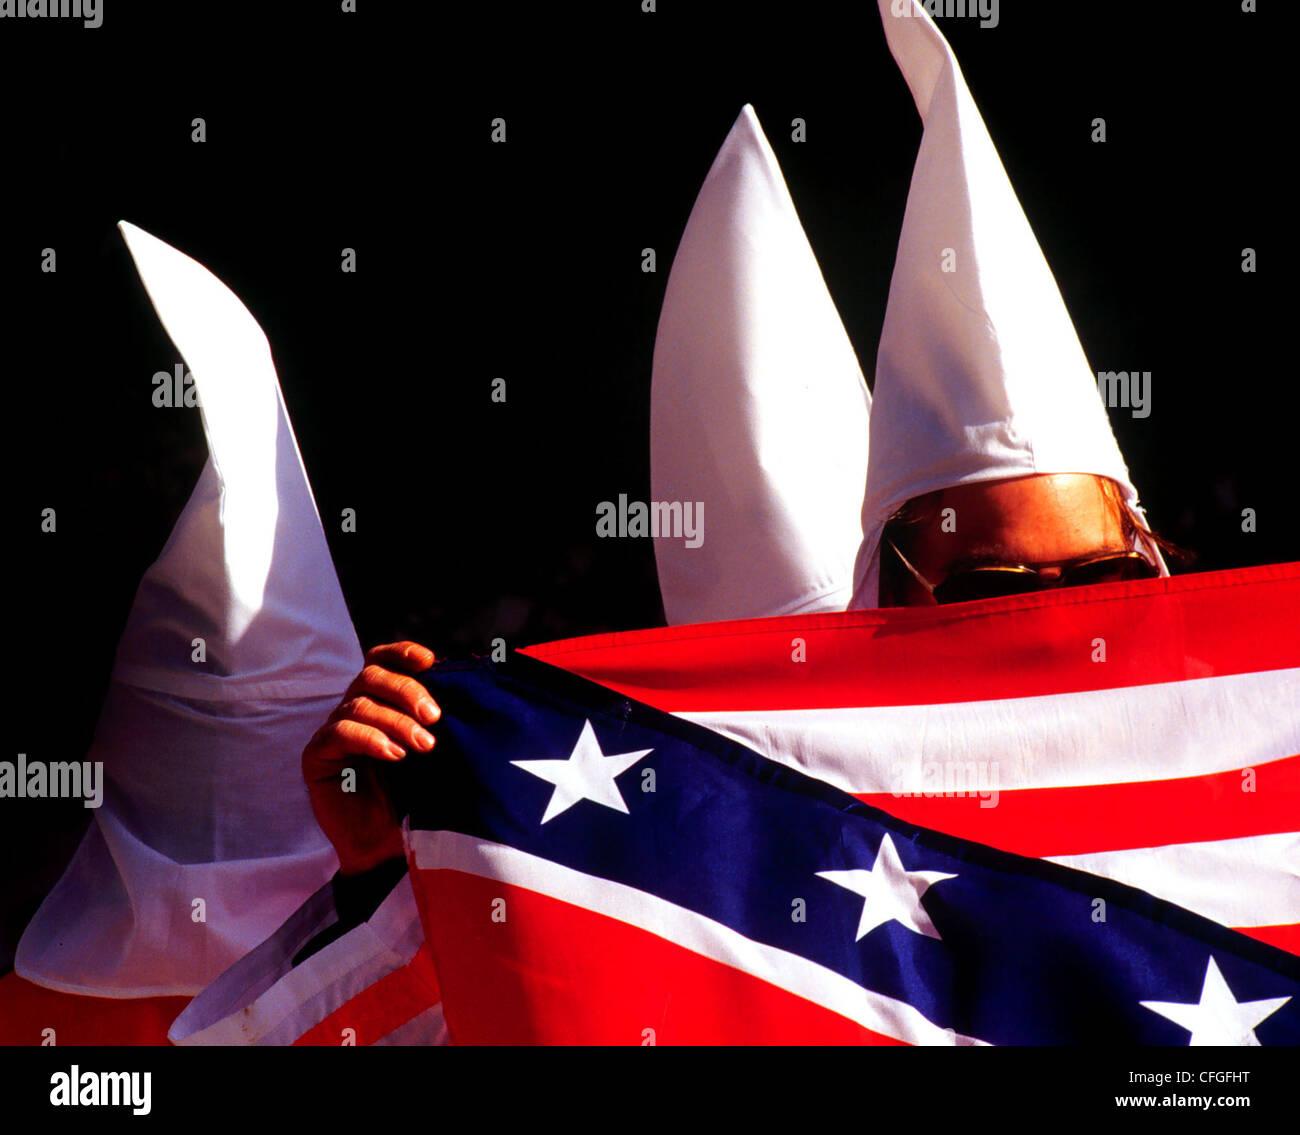 Mitgliedern des Ku Klux Klan abzuwenden, die Kameras oder verbergen ihre Gesichter während einer Kundgebung in New York City statt Stockfoto